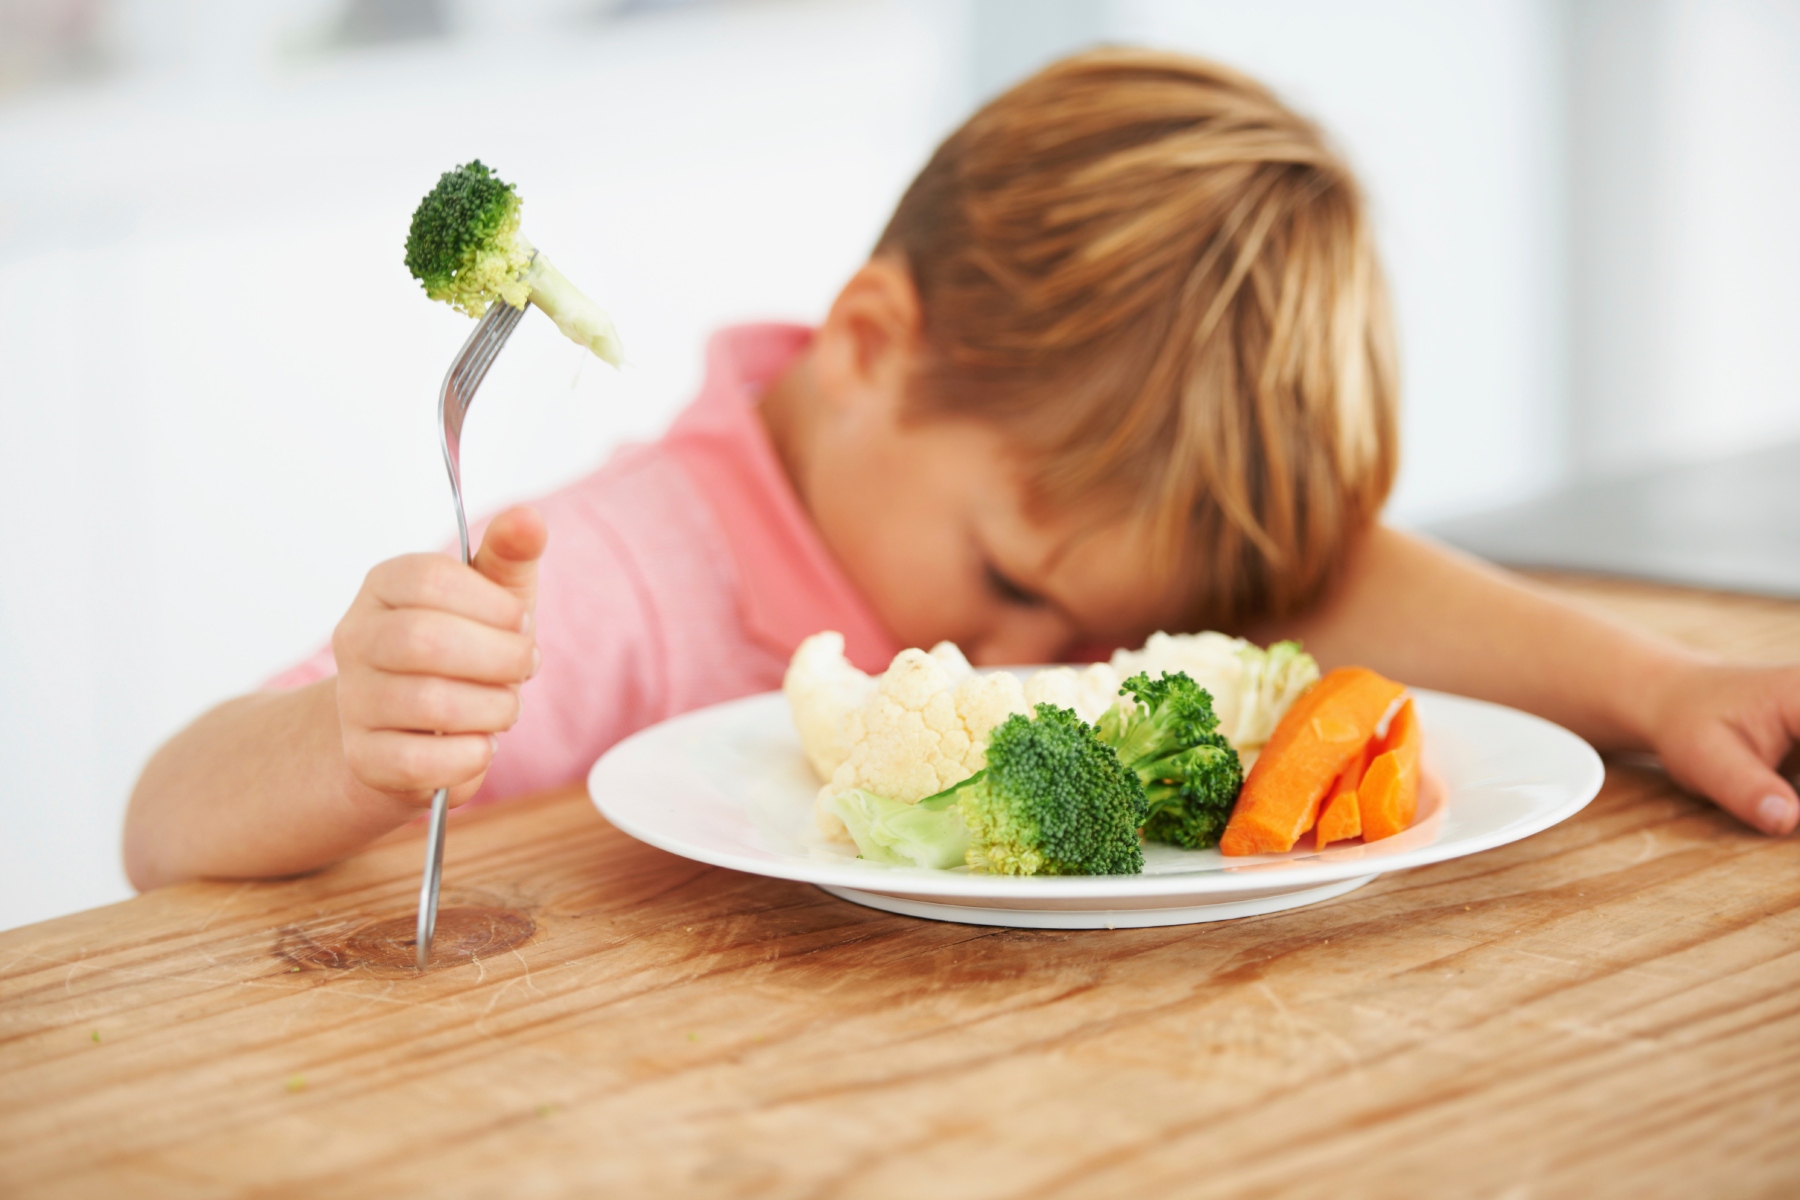 Παιδιά διατροφή: Βάλτε τα παιδιά σας να τρώνε υγιεινά ακολουθώντας μια κουλτούρα διατροφής